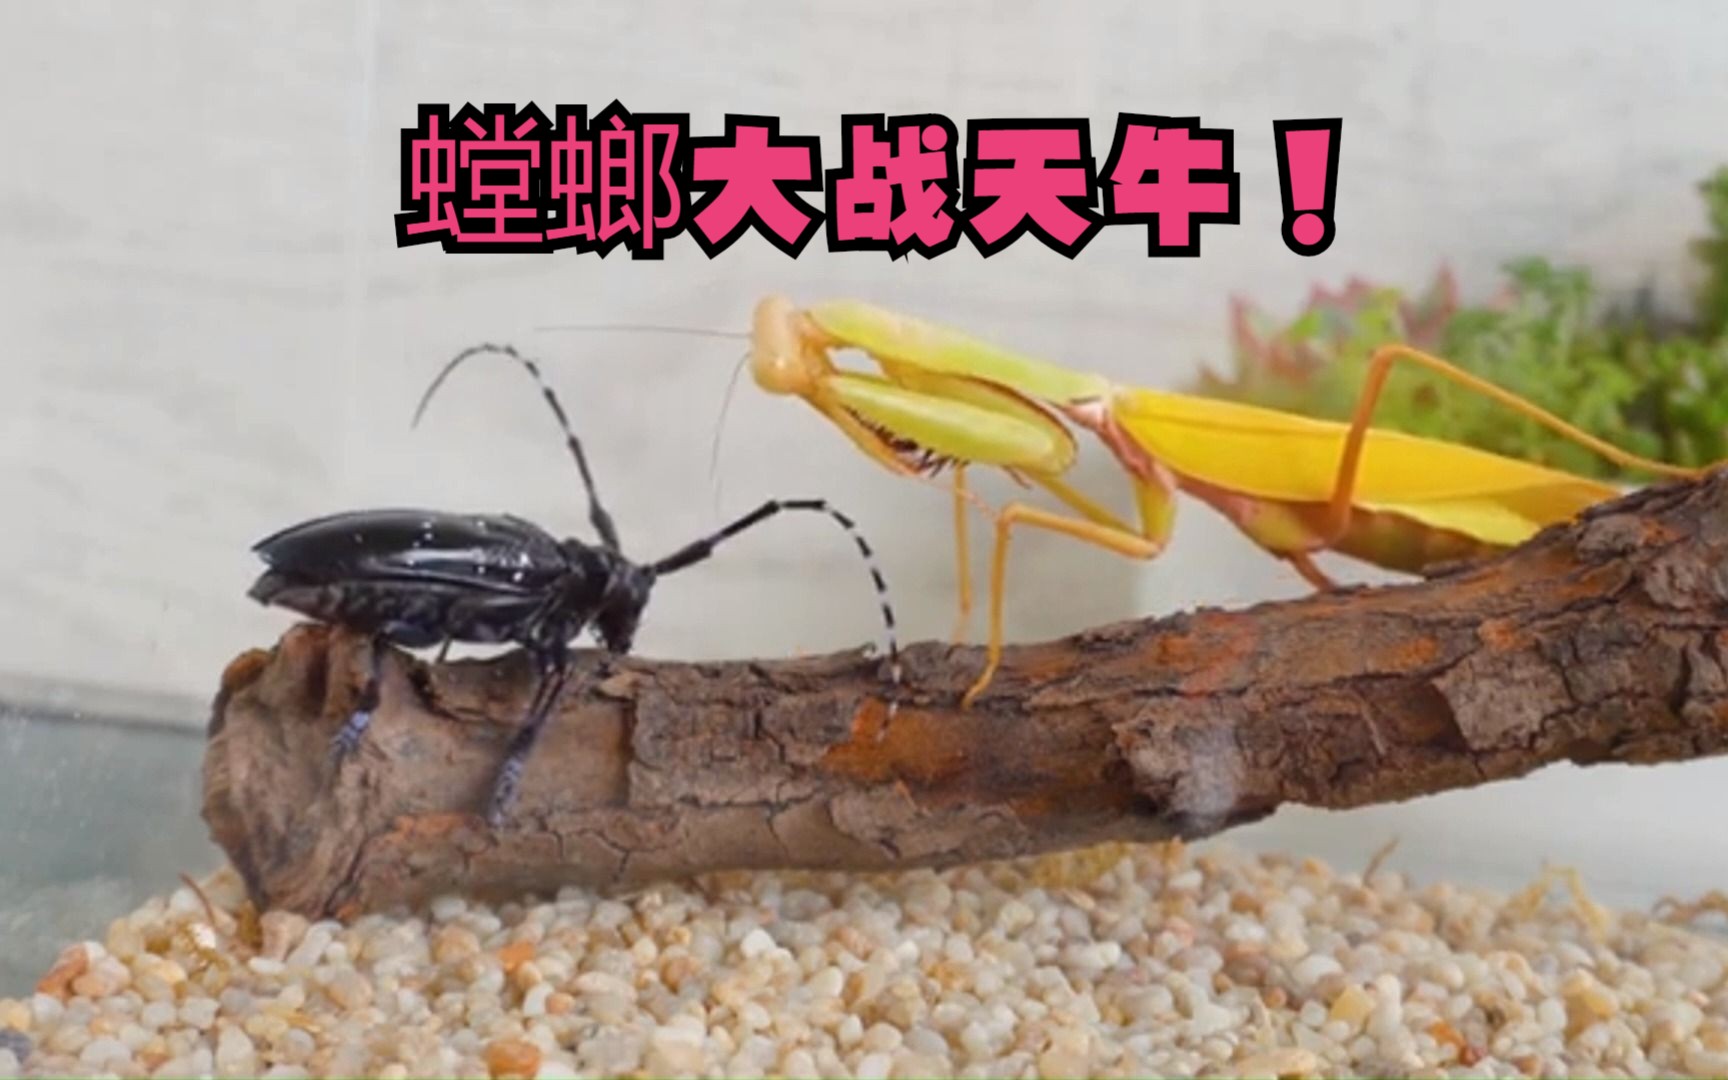 蚁狮vs螳螂图片